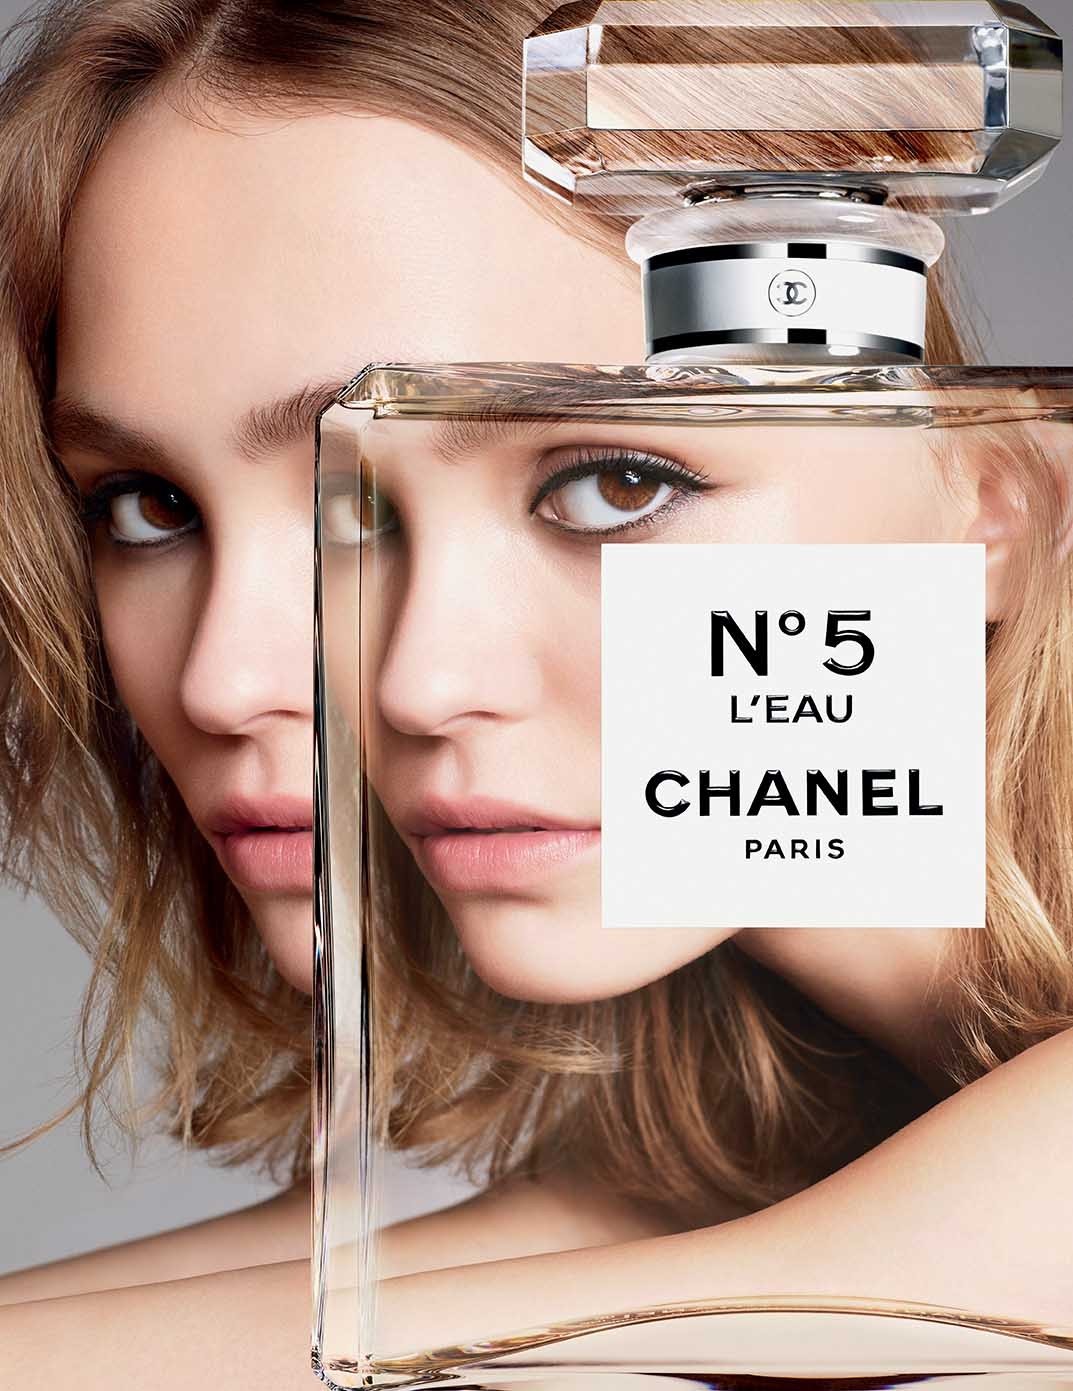 Chanel launches No 5 L'Eau